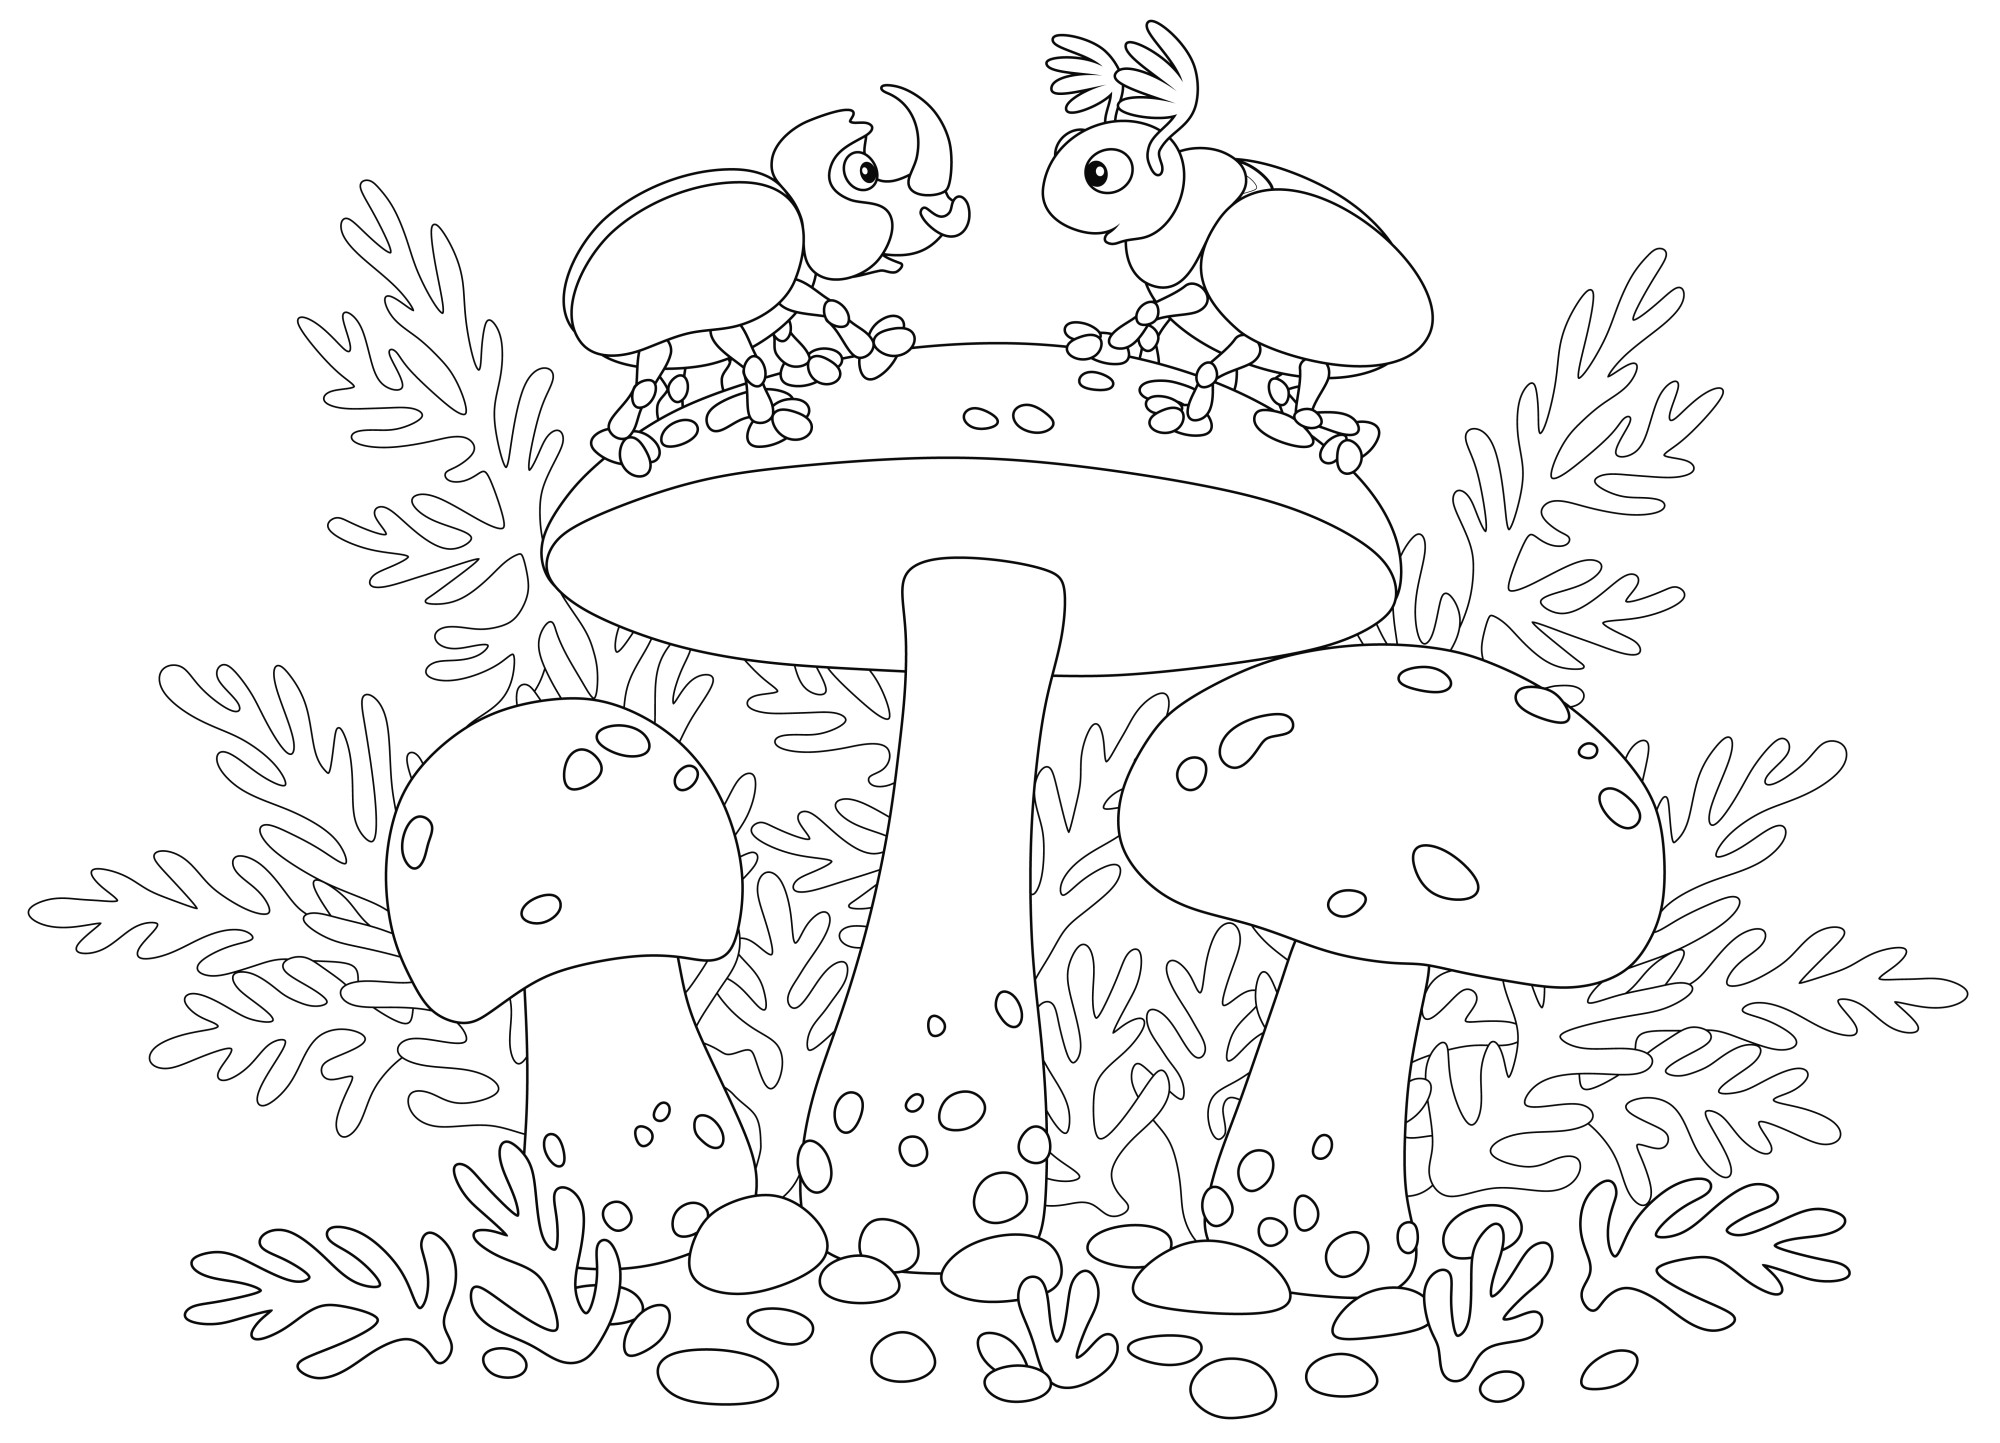 Раскраска для детей: съедобные грибы с большими шляпками и жуками